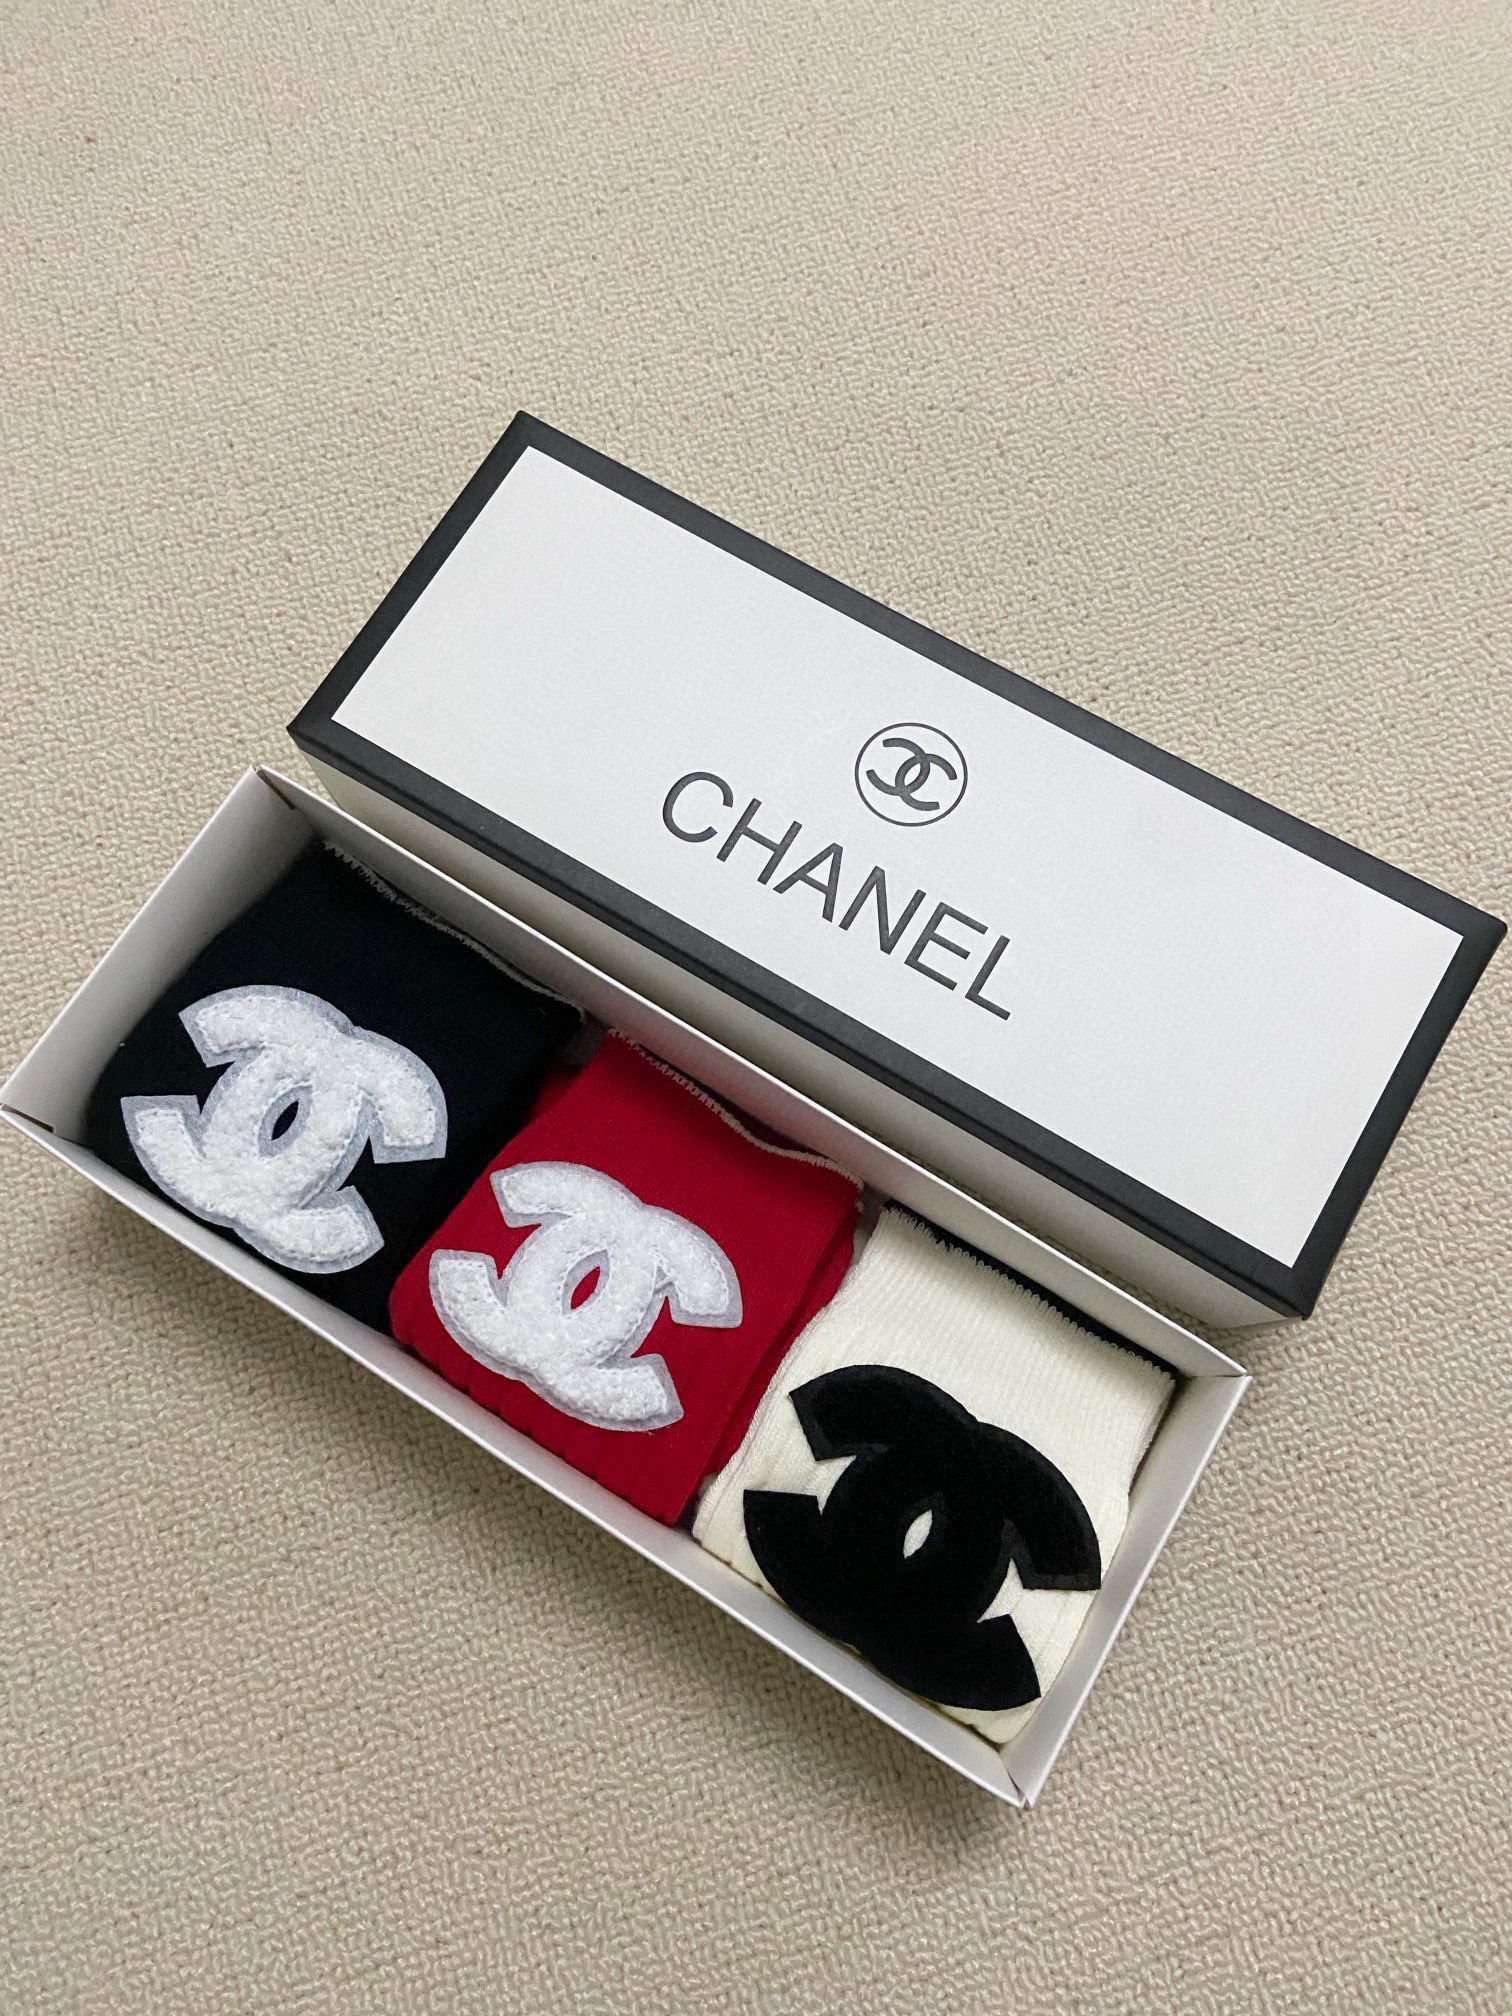 配包装一盒3双Chanel香奈儿经典字母logo双针针织纯棉中筒袜ins爆款！专柜在售ing好看到爆炸！